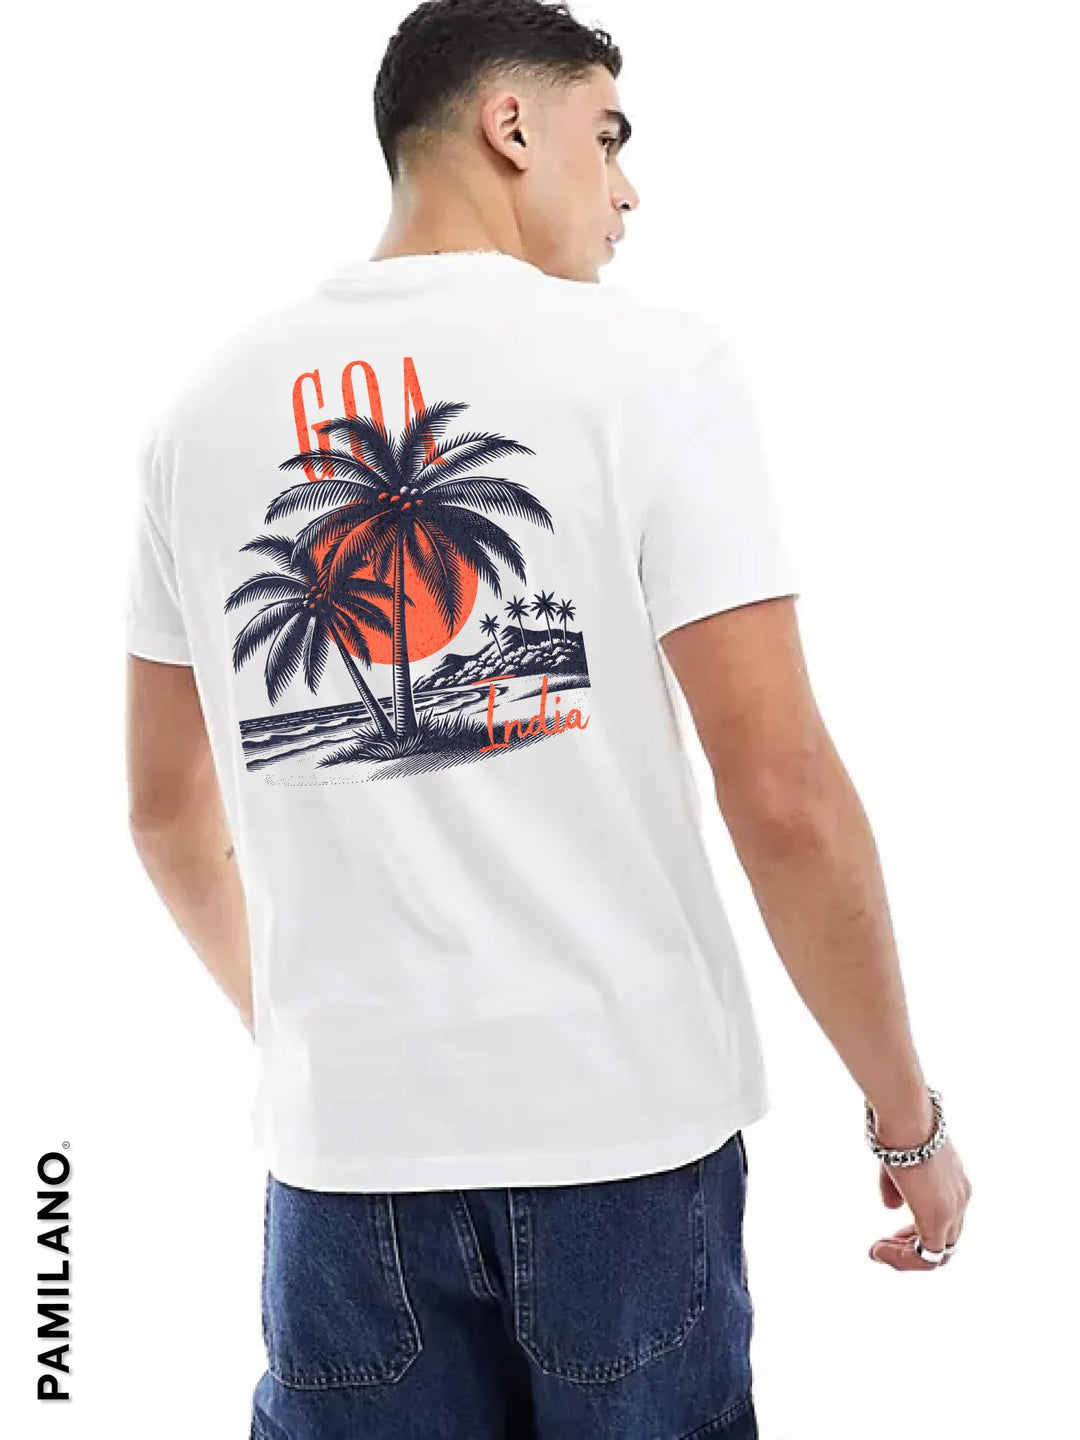 Goa India - Unisex T-Shirt